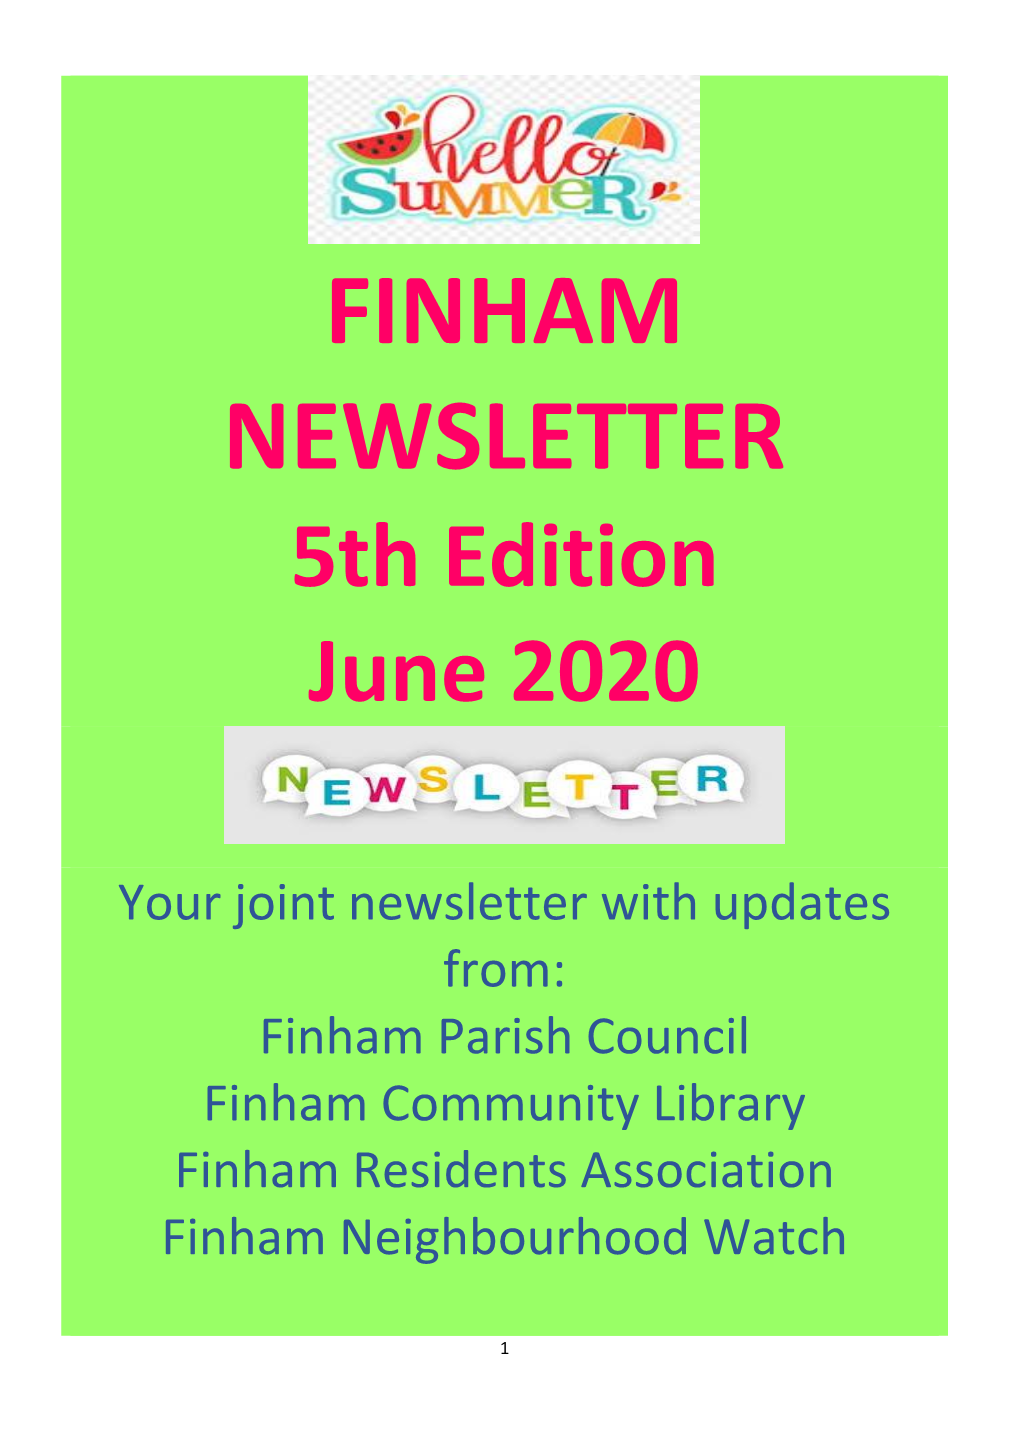 FINHAM NEWSLETTER 5Th Edition June 2020